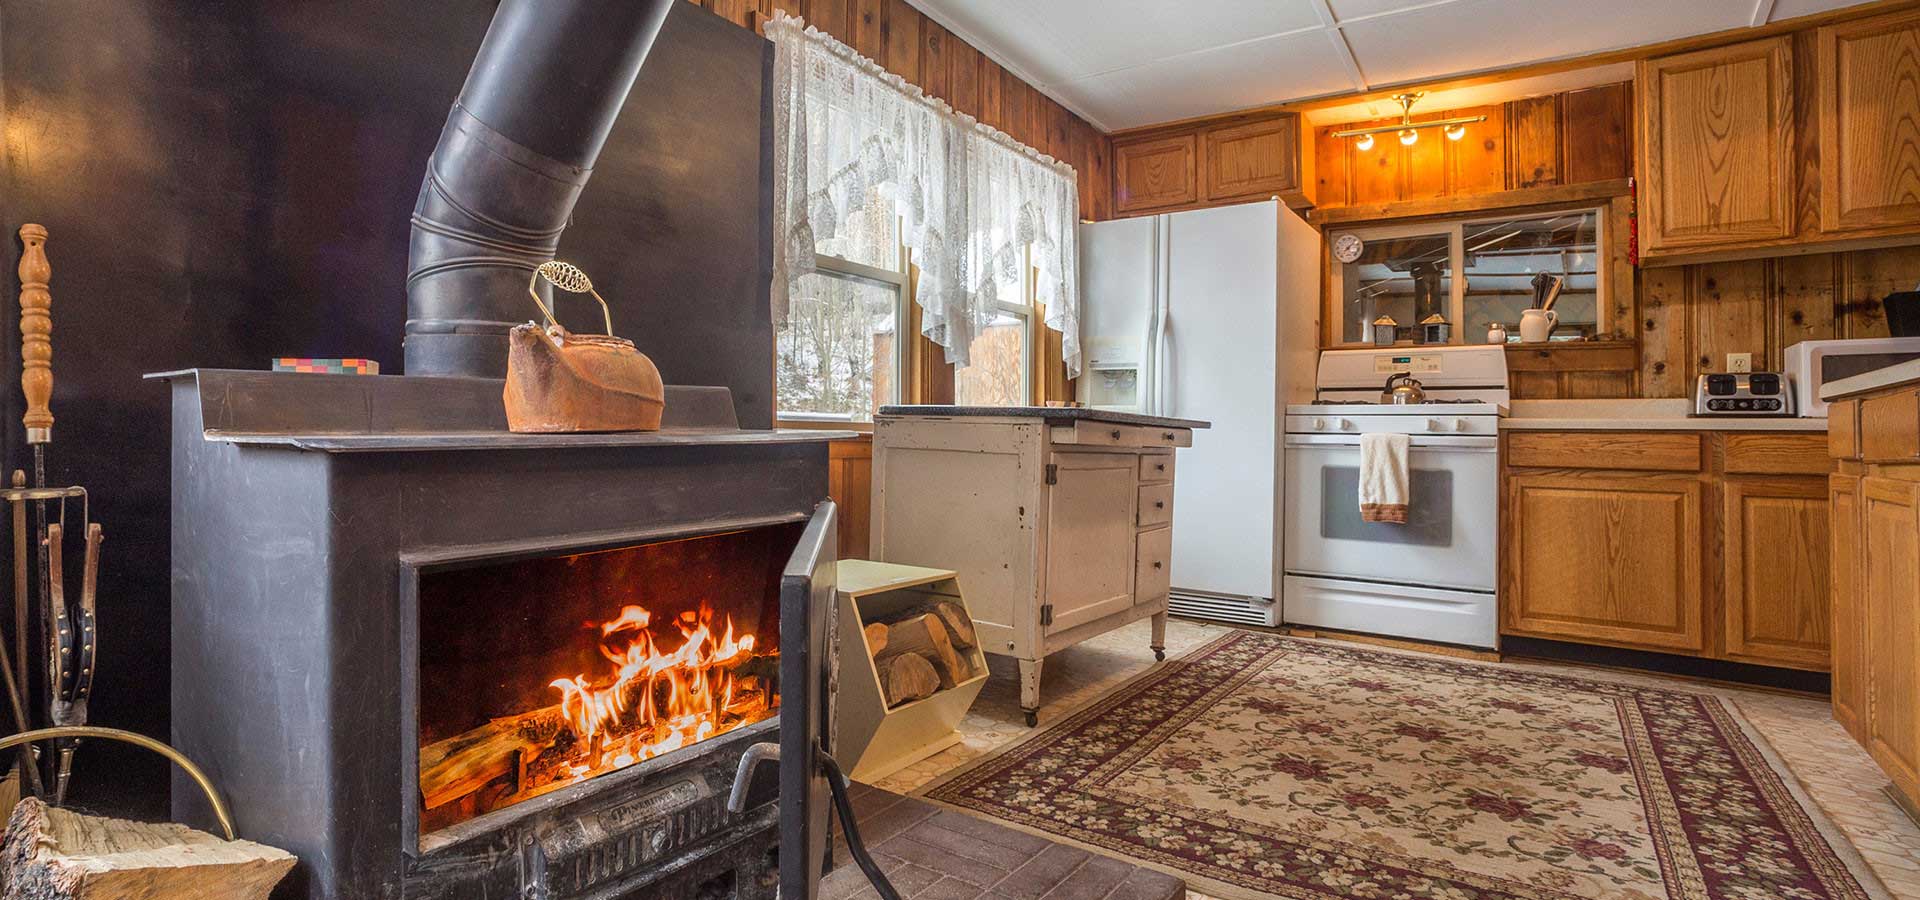 kitchen-wood-stove